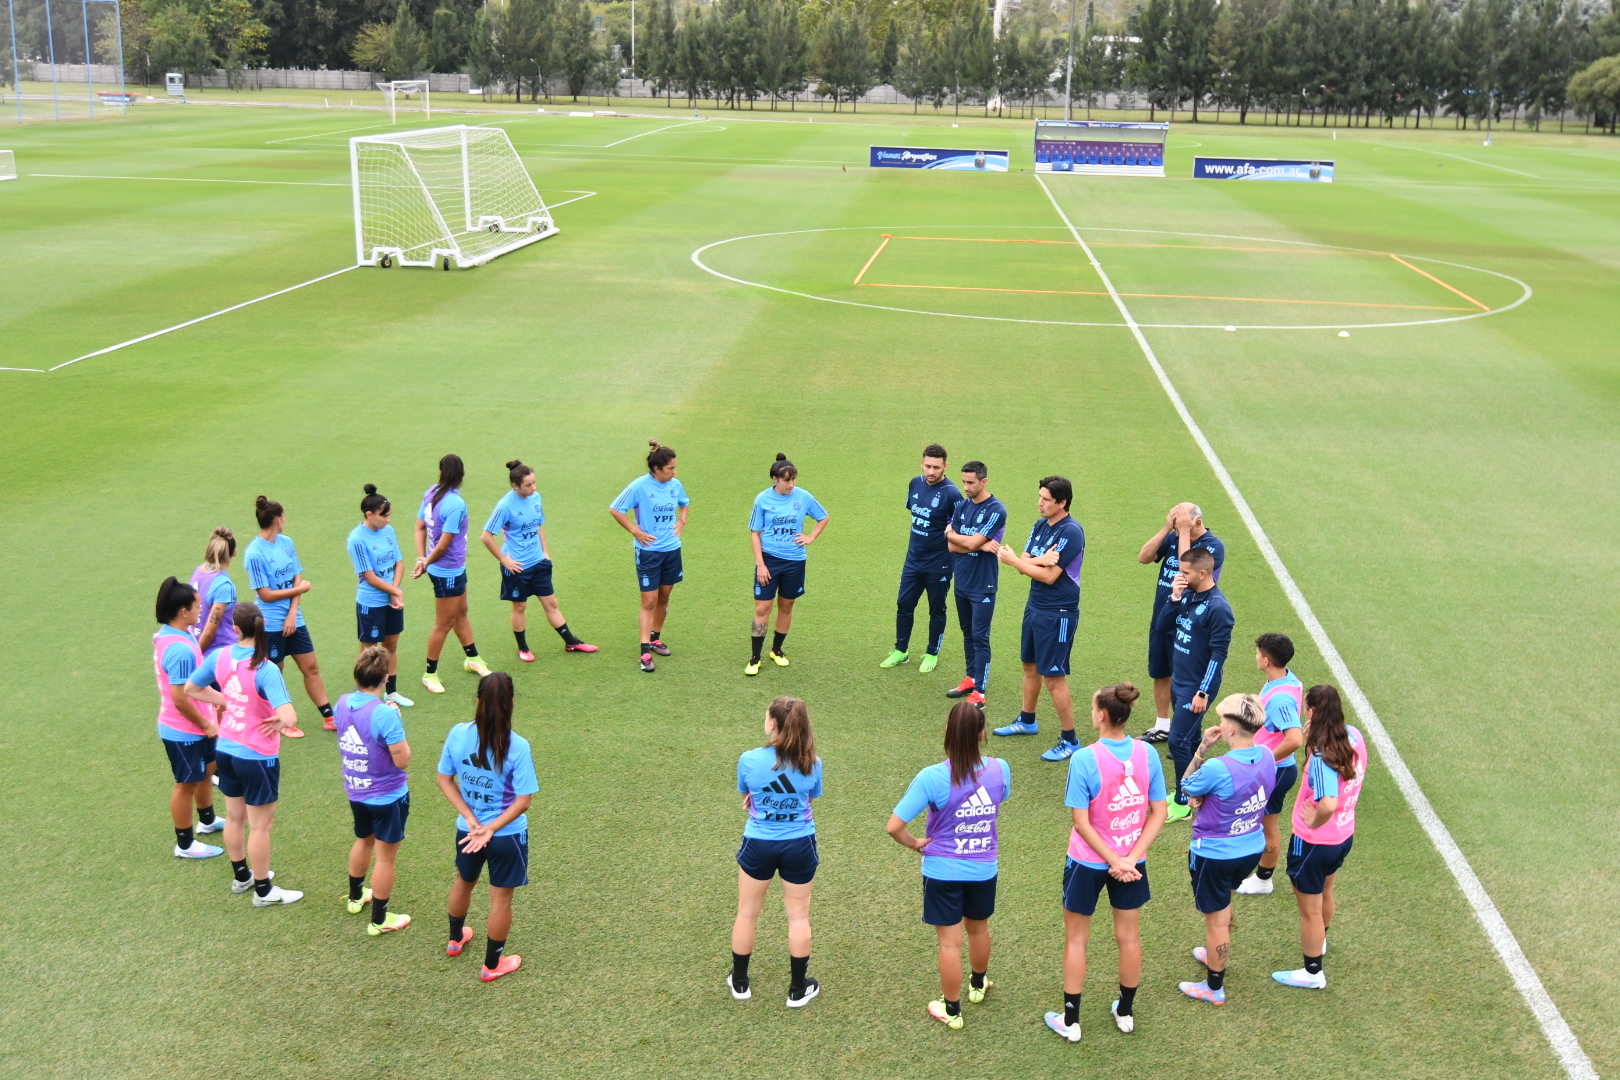 La Selección Argentina de fútbol femenino entrenará en la Boutique durante su estadía en Córdoba | Canal Showsport